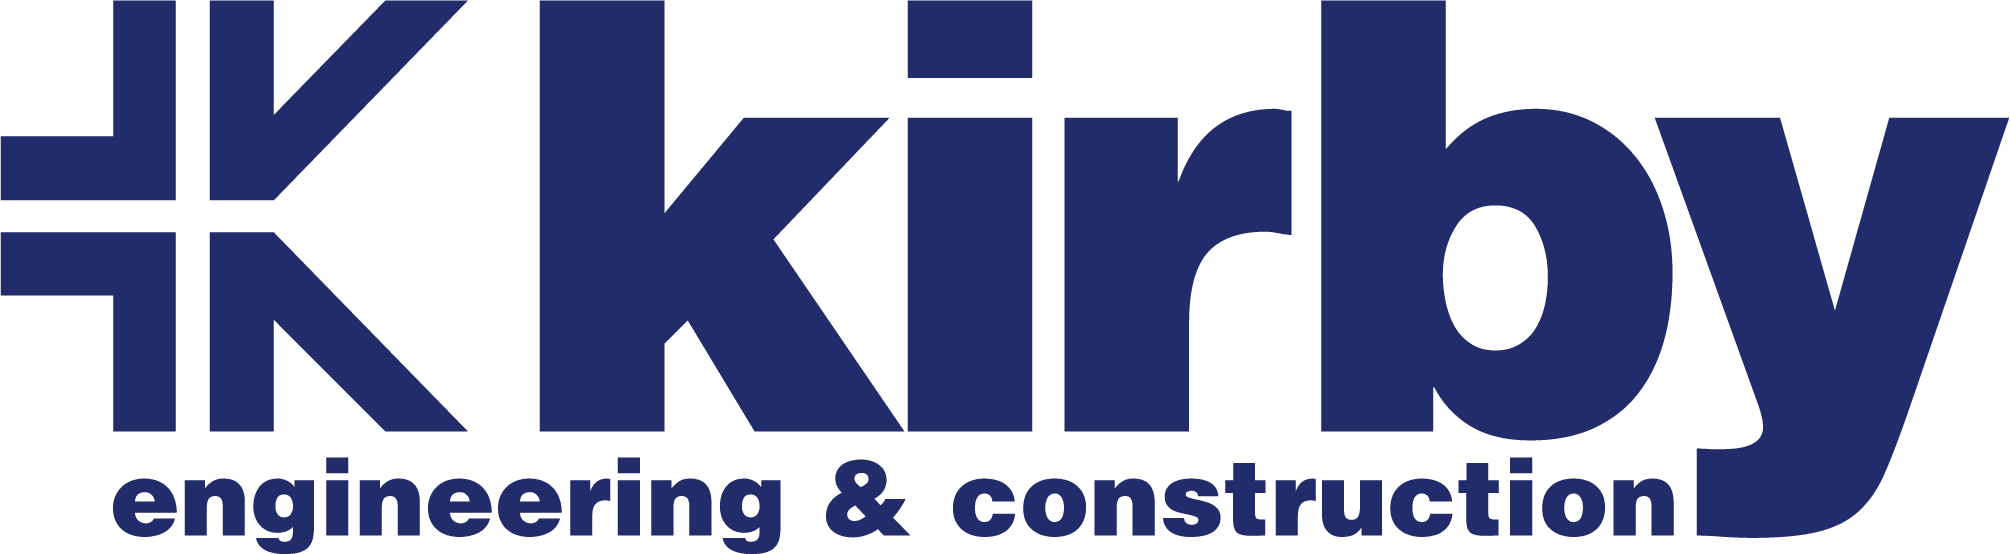 Kirby Construction Company Inc